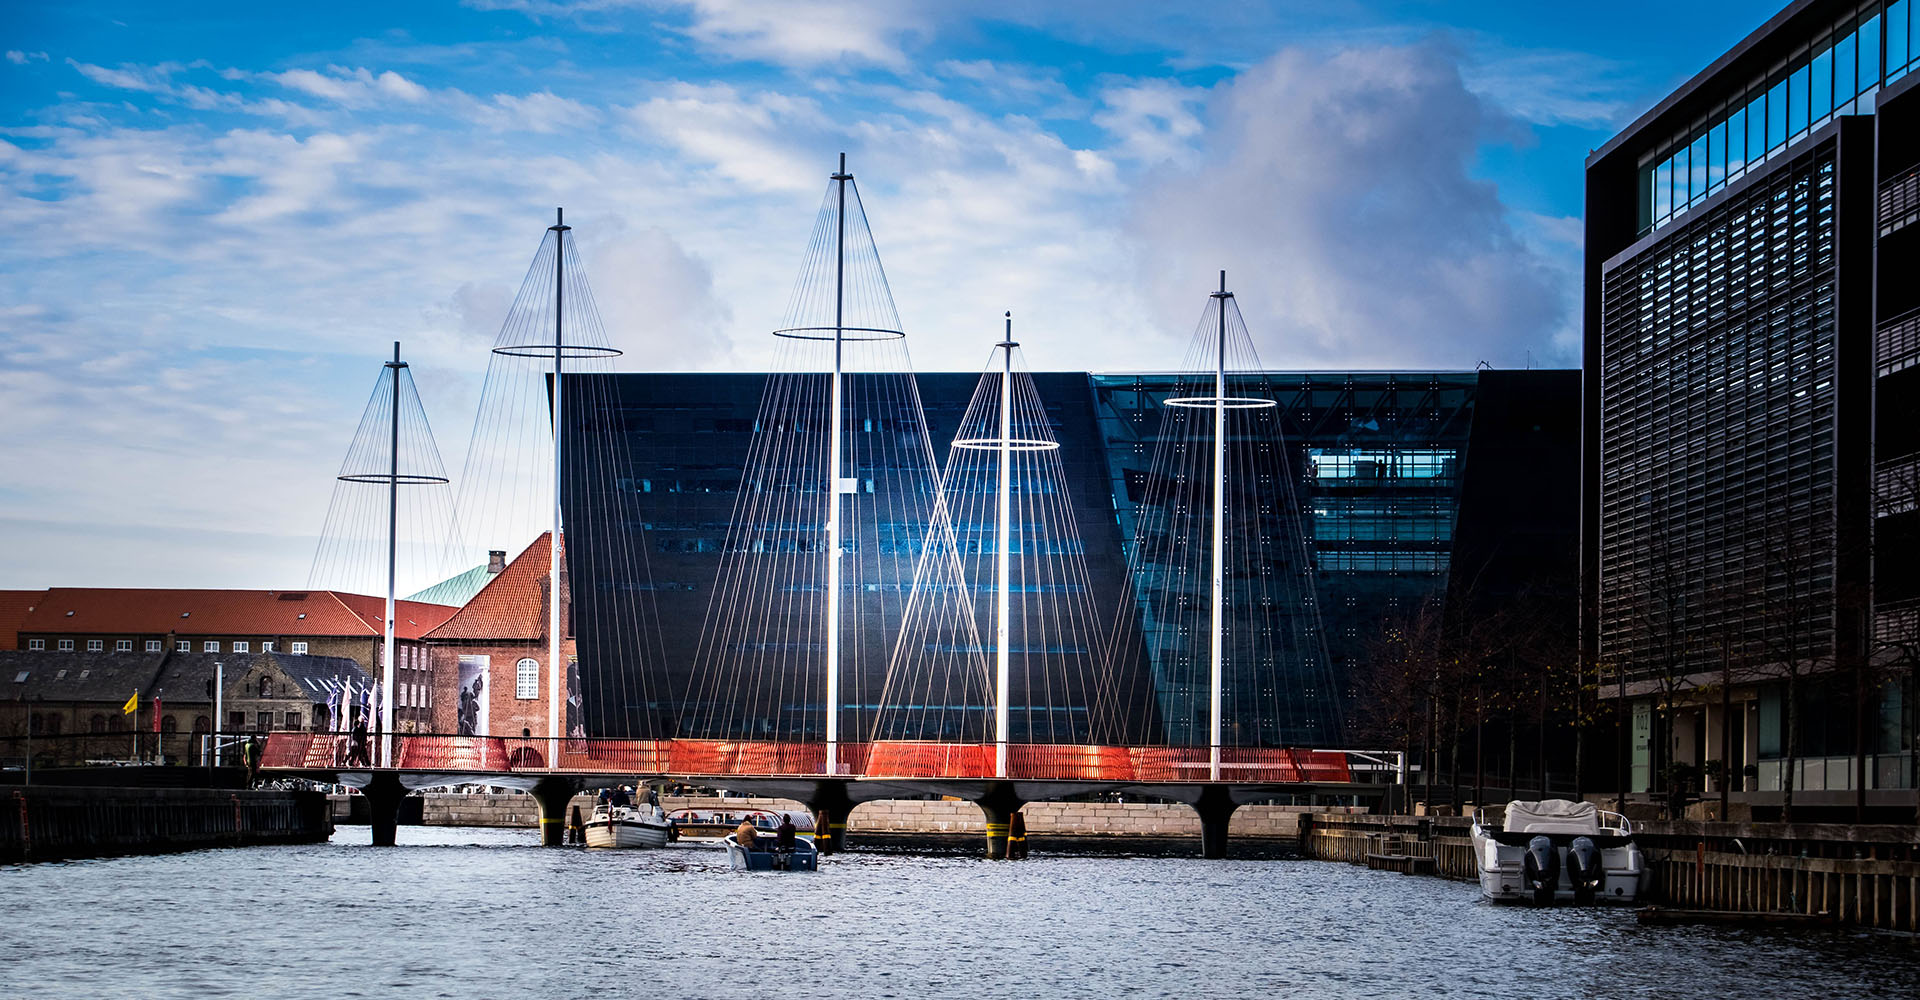 Поворотный мост Cirkelbroen - кинетическая архитектура, помогающая переосмыслить городское пространство